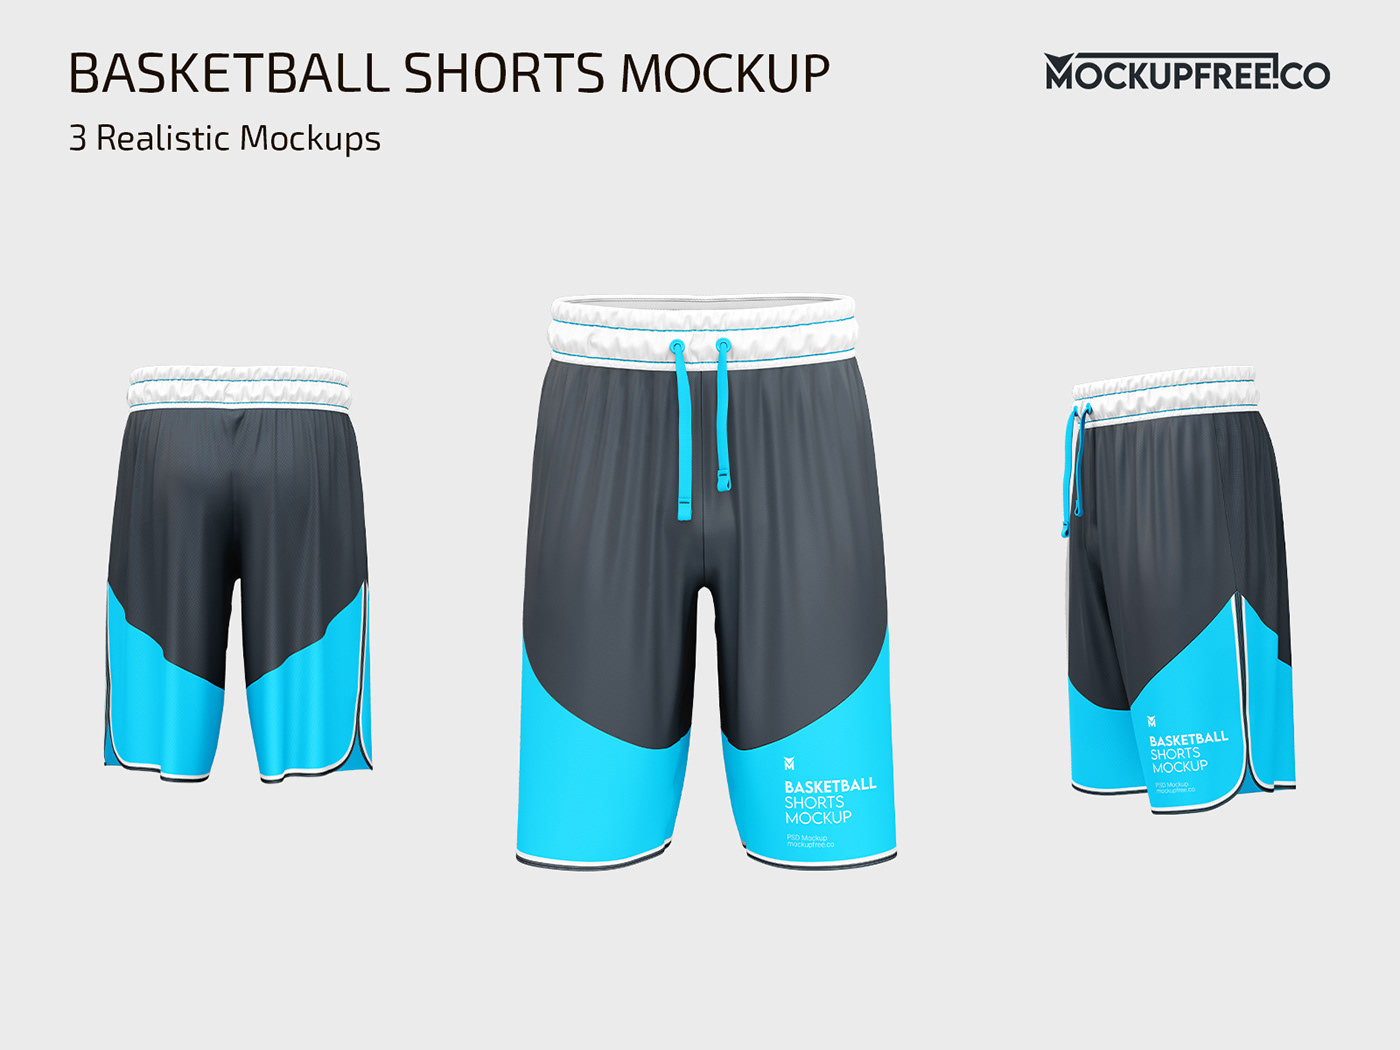 Free Basketball Shorts Mockup on Behance